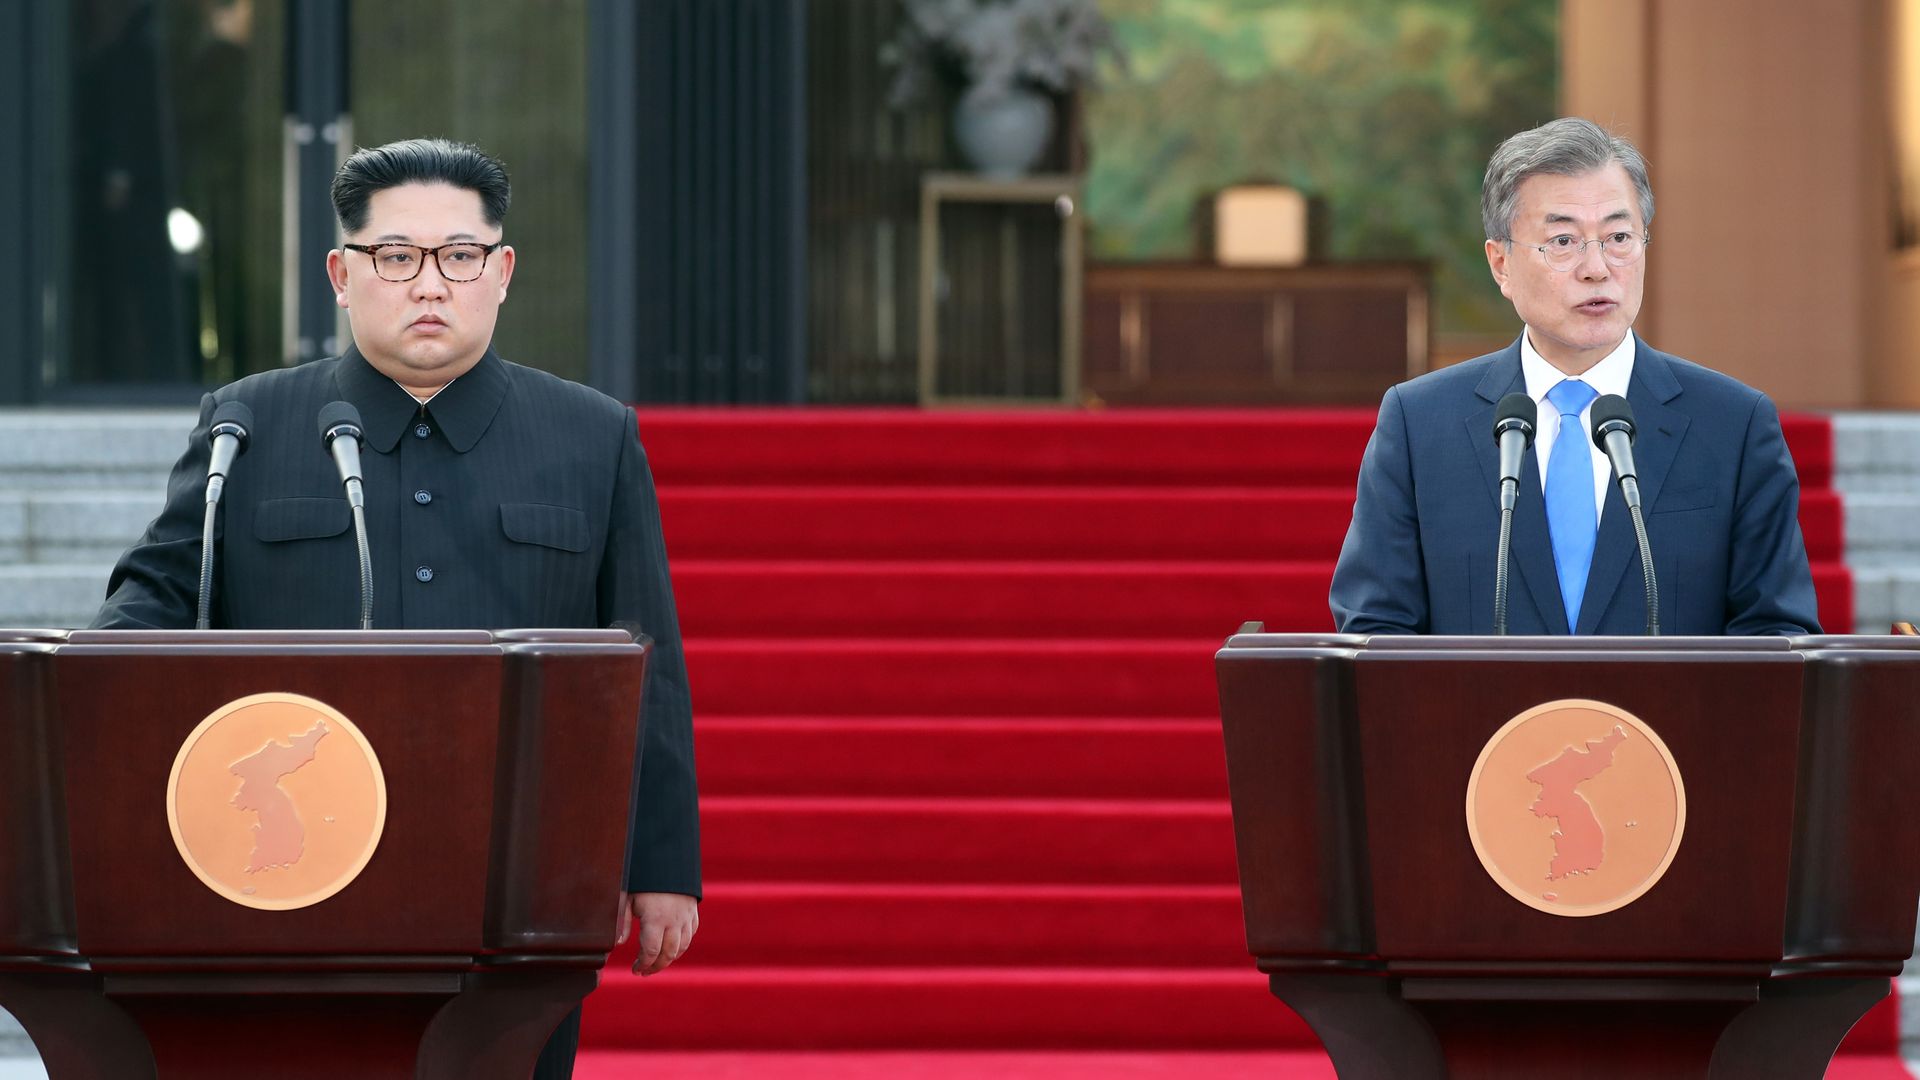 Kim Jong-un and Moon Jae-in look bored.